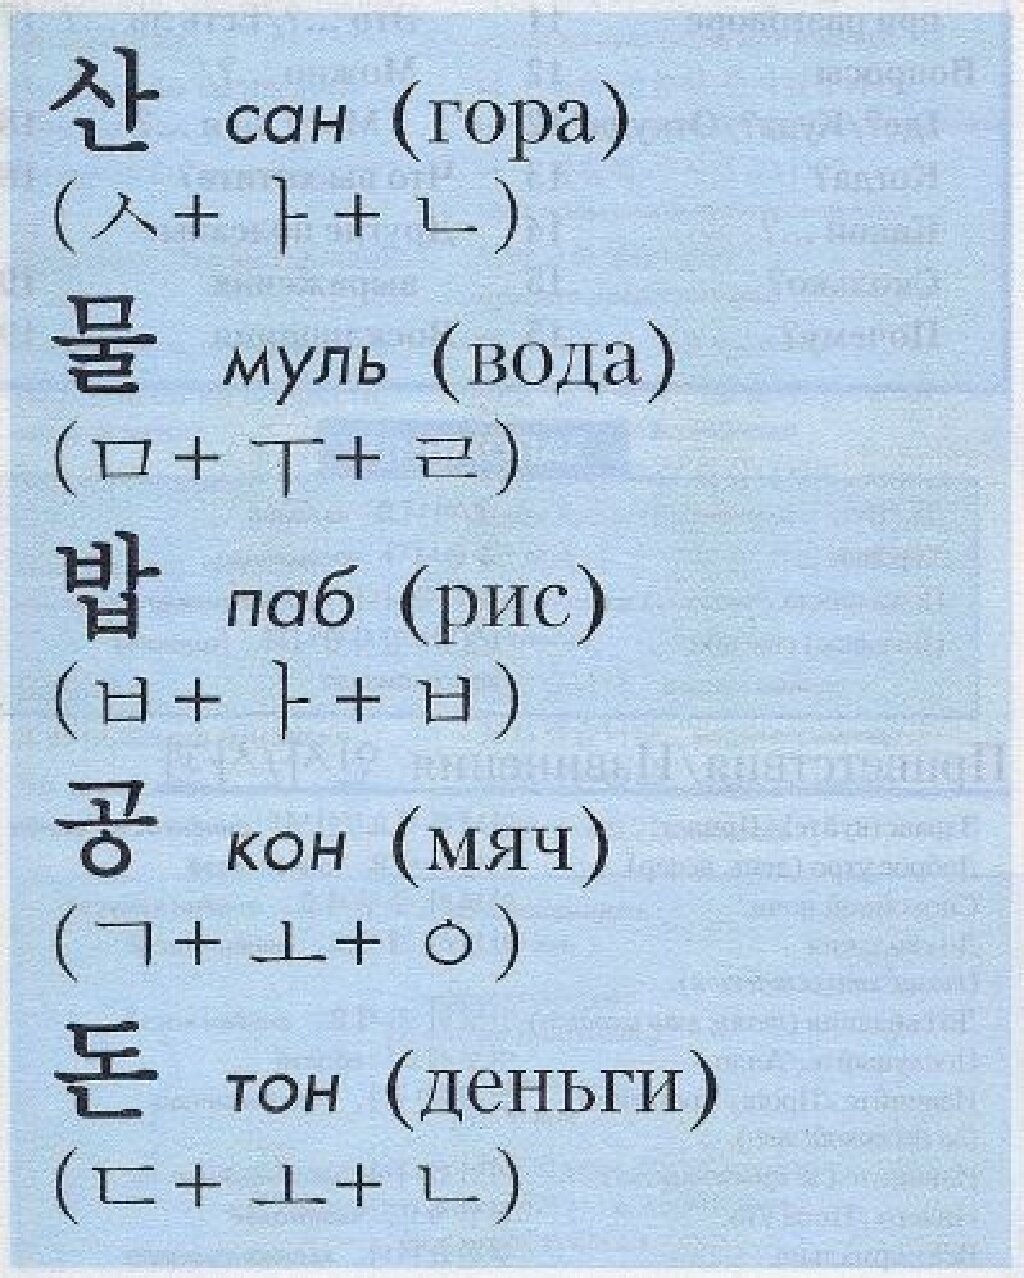 Учить корейский с нуля для начинающих. Учить корейский язык с нуля. Как научить корейский язык. Корейские слова для начинающих с переводом.